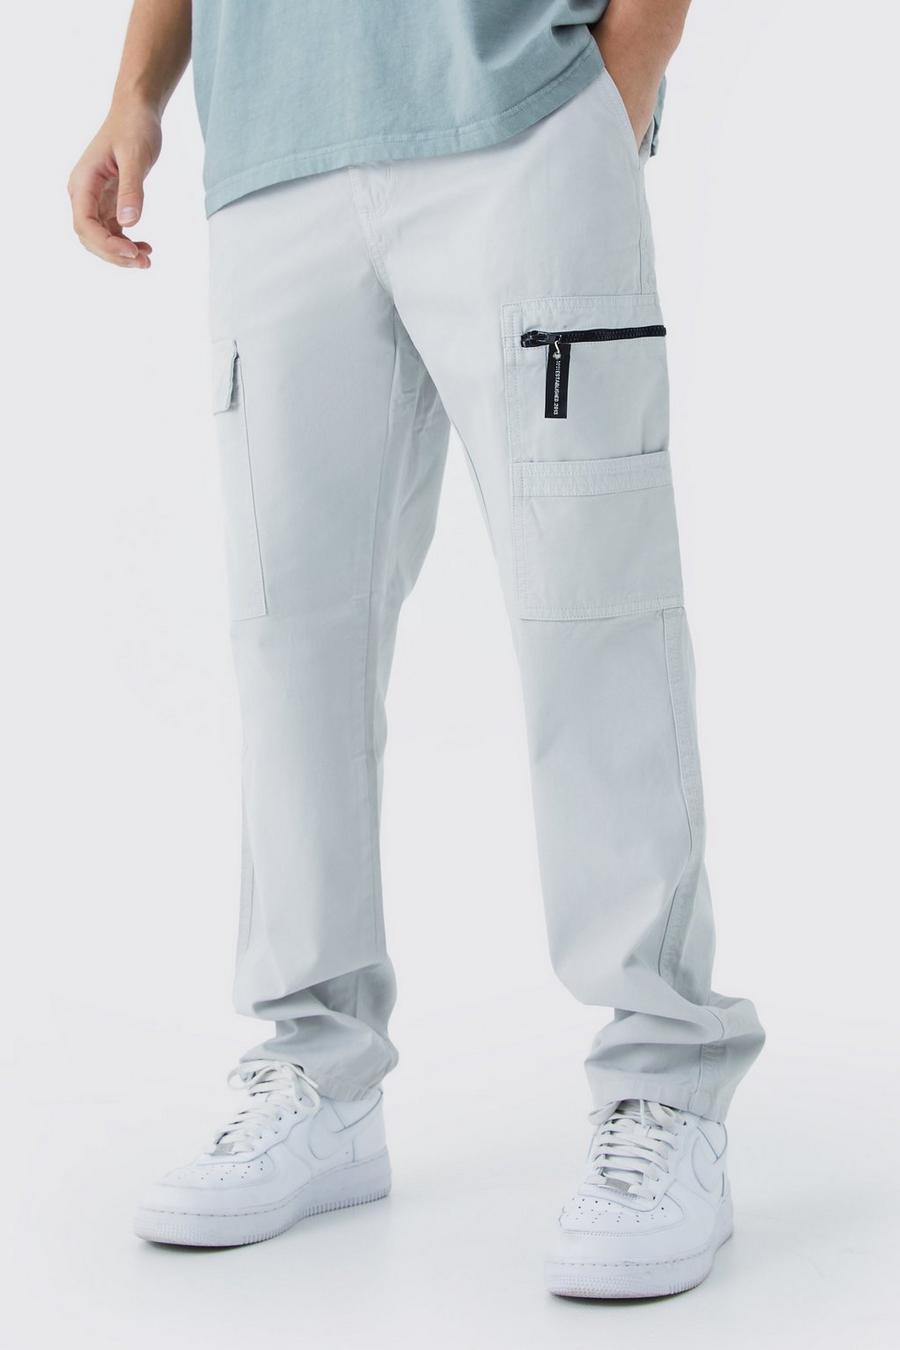 Slate Straight Leg Cargo Trouser With Branded Zip Puller